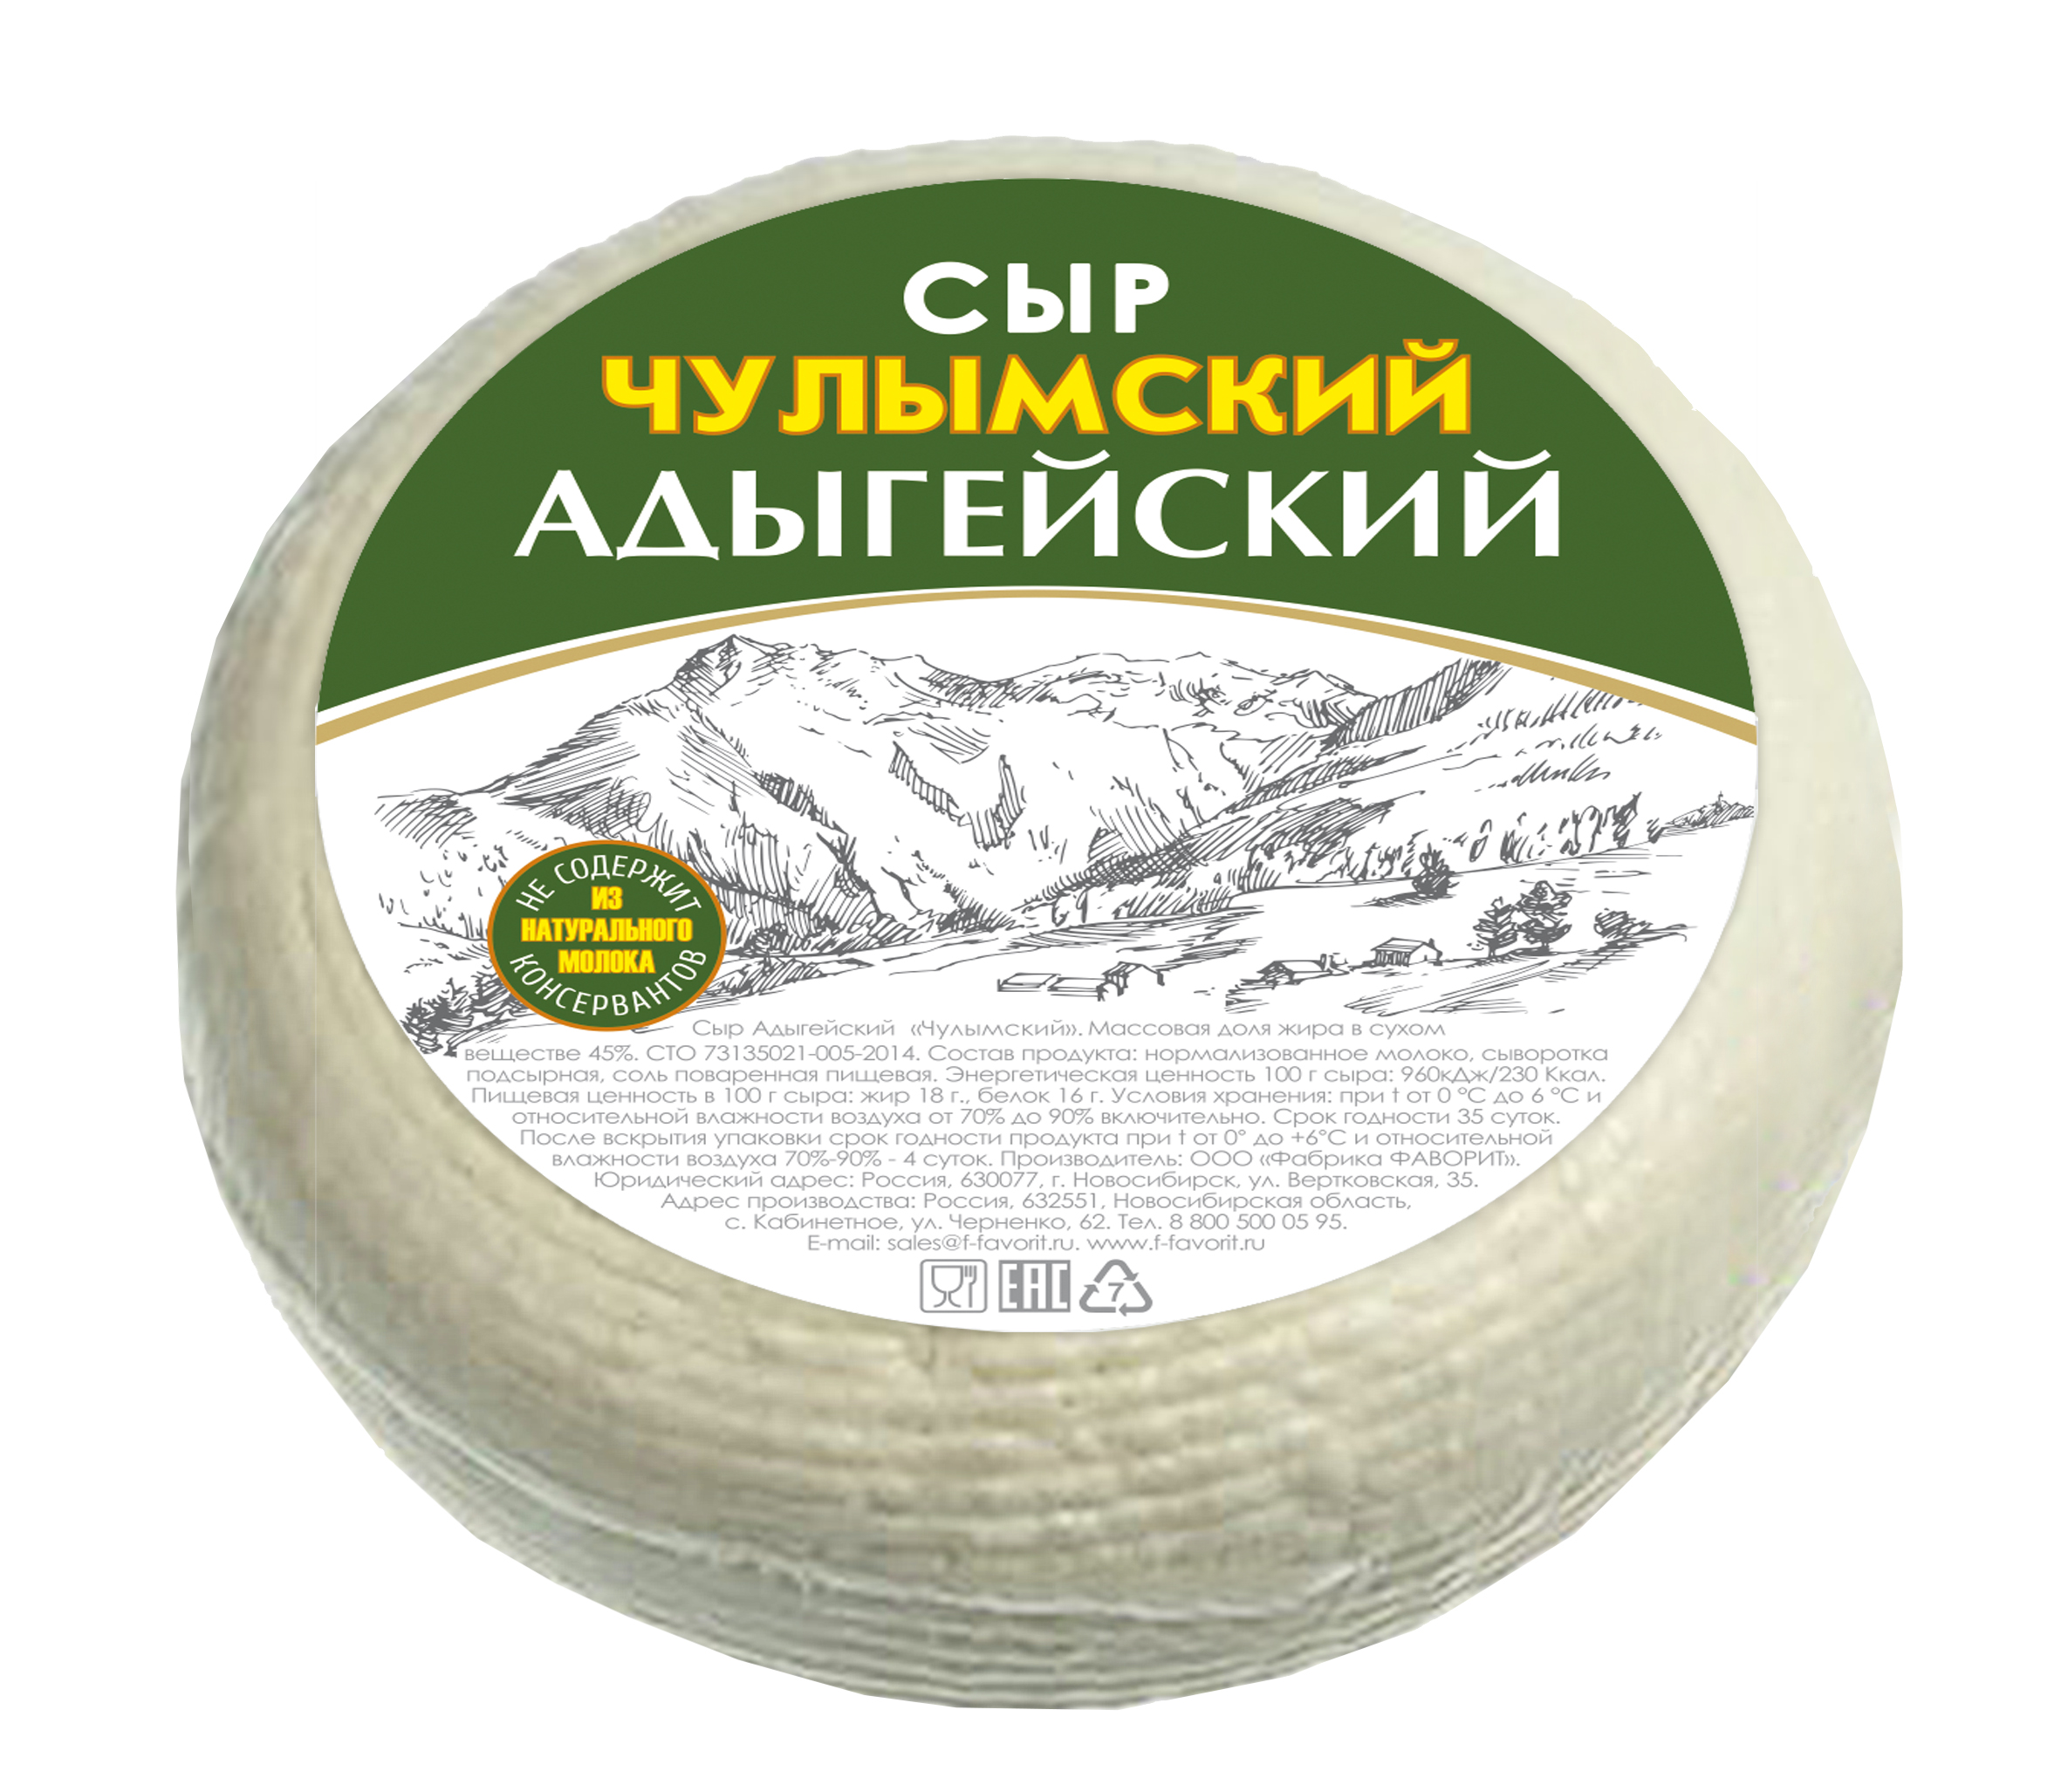 Сыр адыгейский фото упаковки